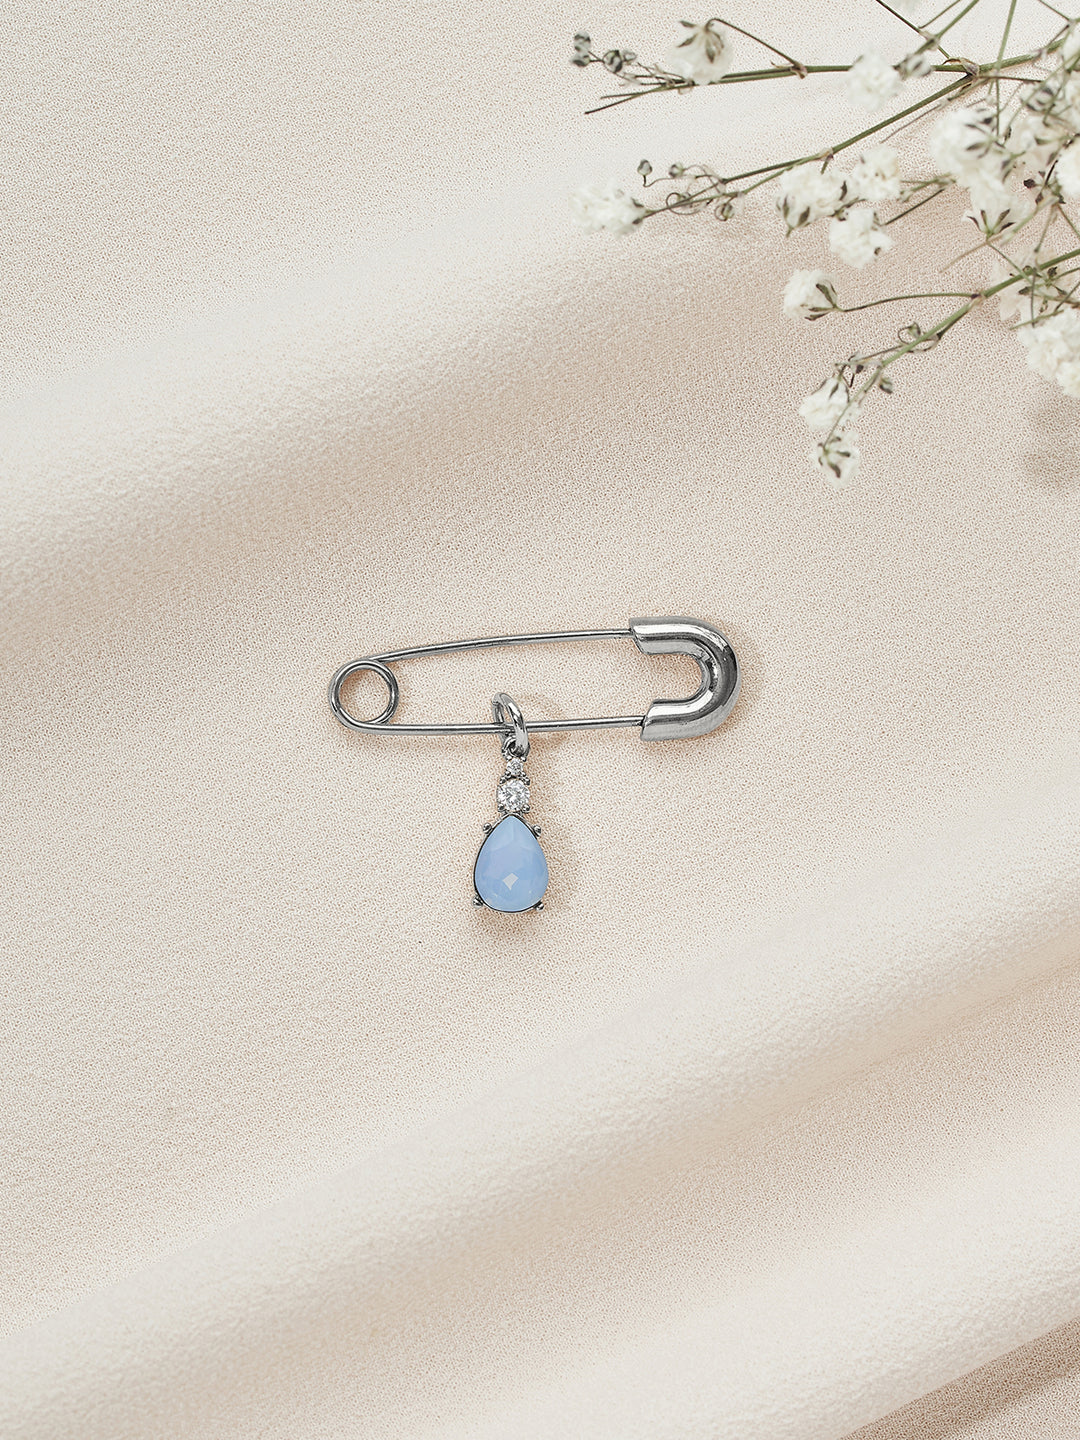 Something Blue Bridal Shower Gift – Kara's Vineyard Wedding